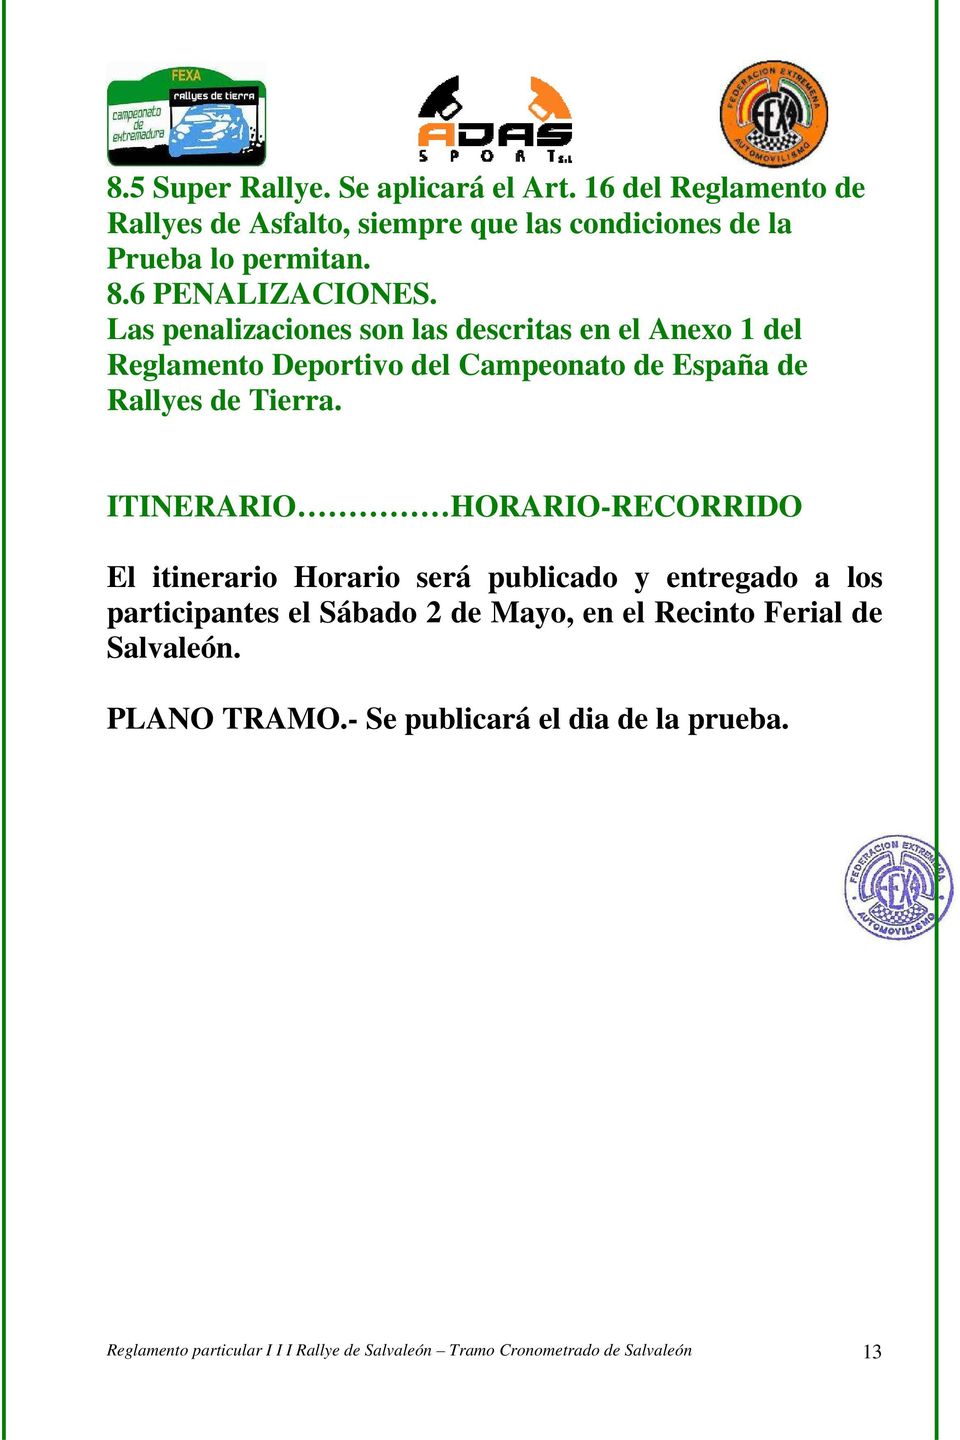 ITINERARIO HORARIO-RECORRIDO El itinerario Horario será publicado y entregado a los participantes el Sábado 2 de Mayo, en el Recinto Ferial